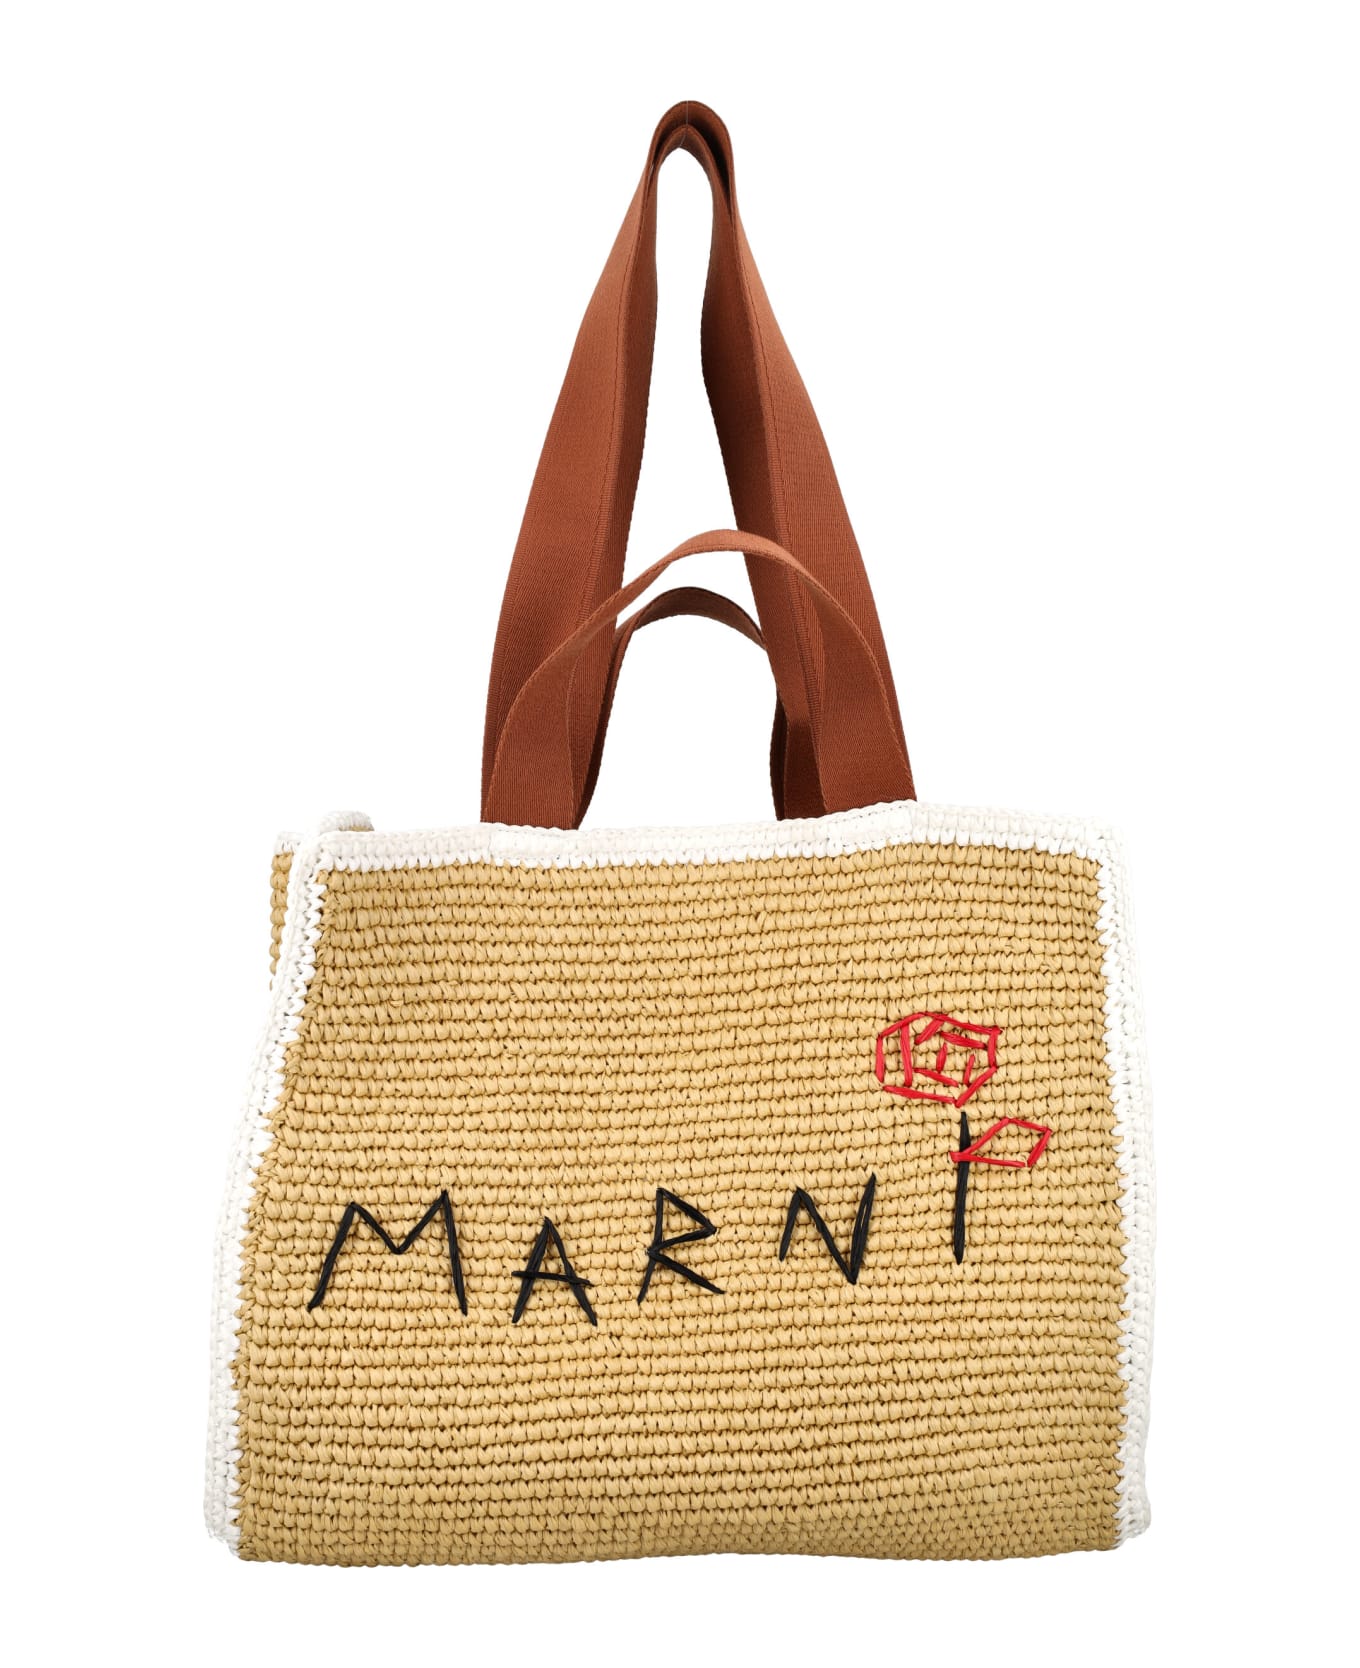 Marni Sillo Medium Shopper - Natural/white/rust